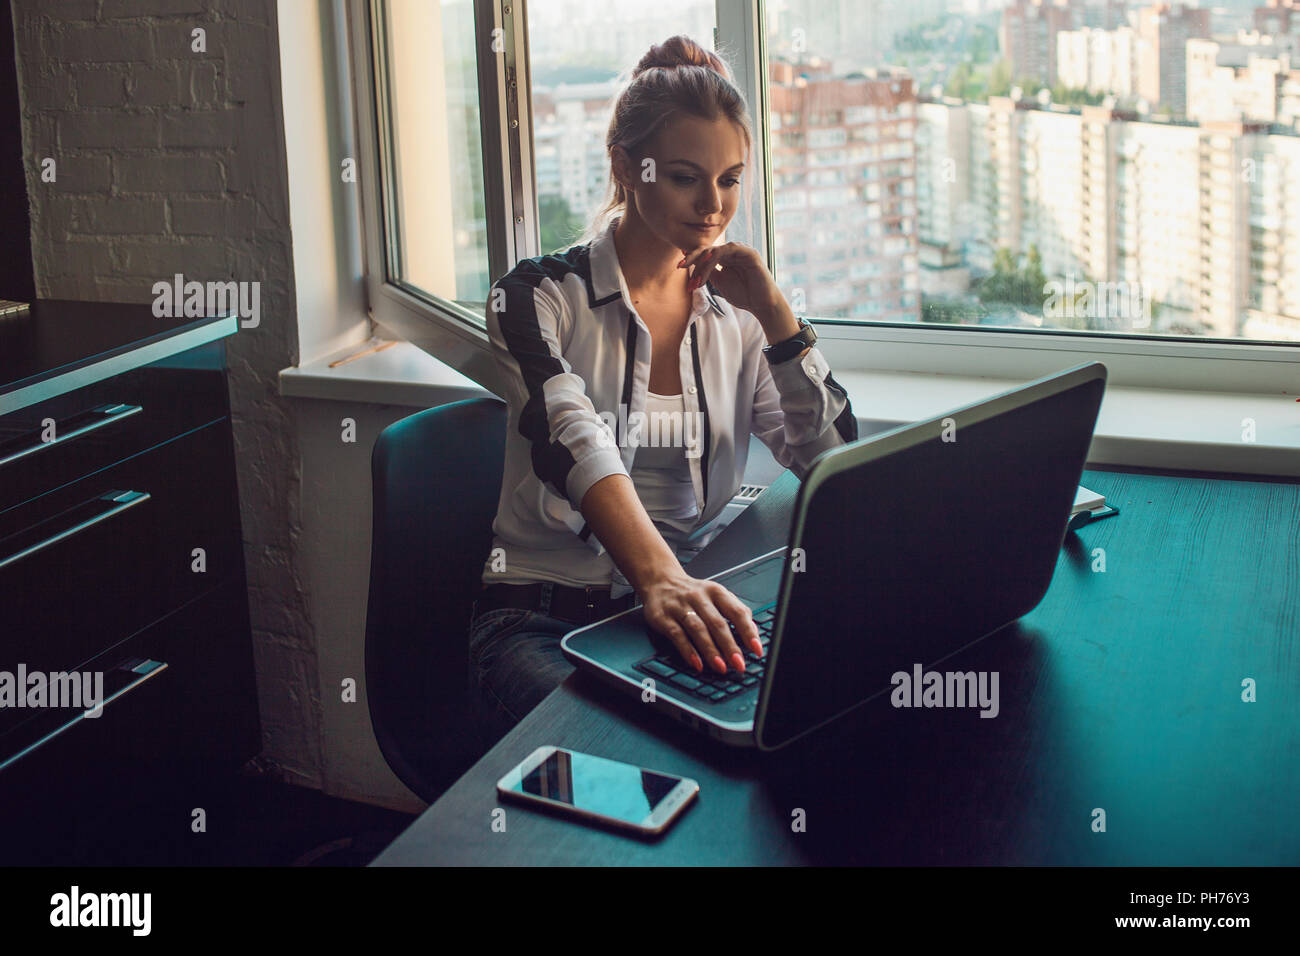 Jeune blonde travaille sur un ordinateur portable. Fille dans un bureau moderne, loft intérieur, code vestimentaire décontracté Banque D'Images